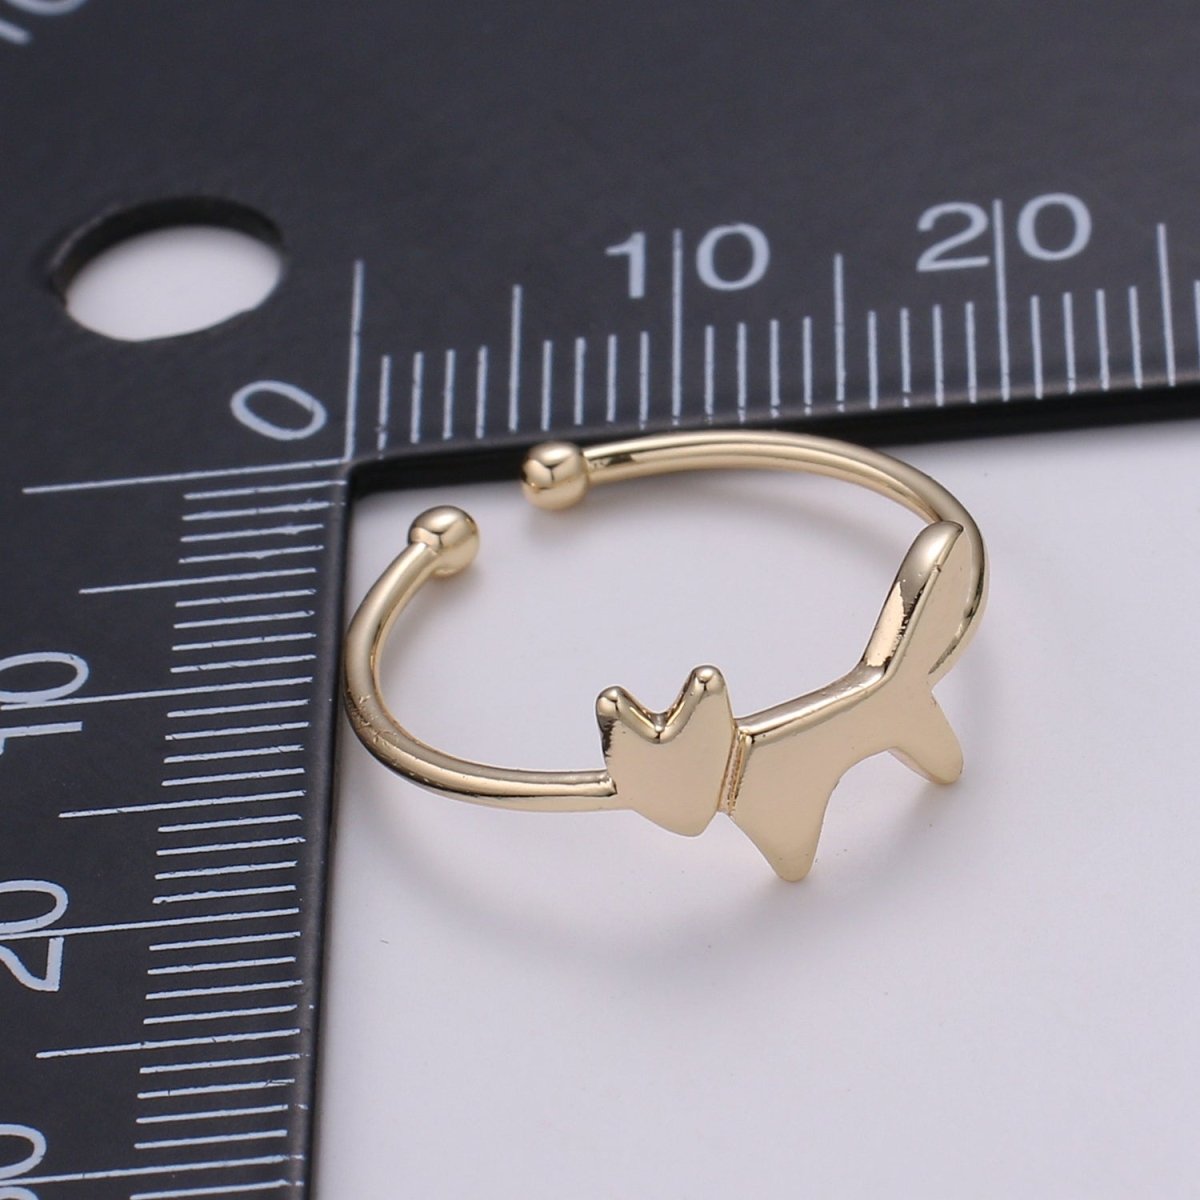 DEL-18K Gold Filled Dog Adjustable Ring - R268 - DLUXCA